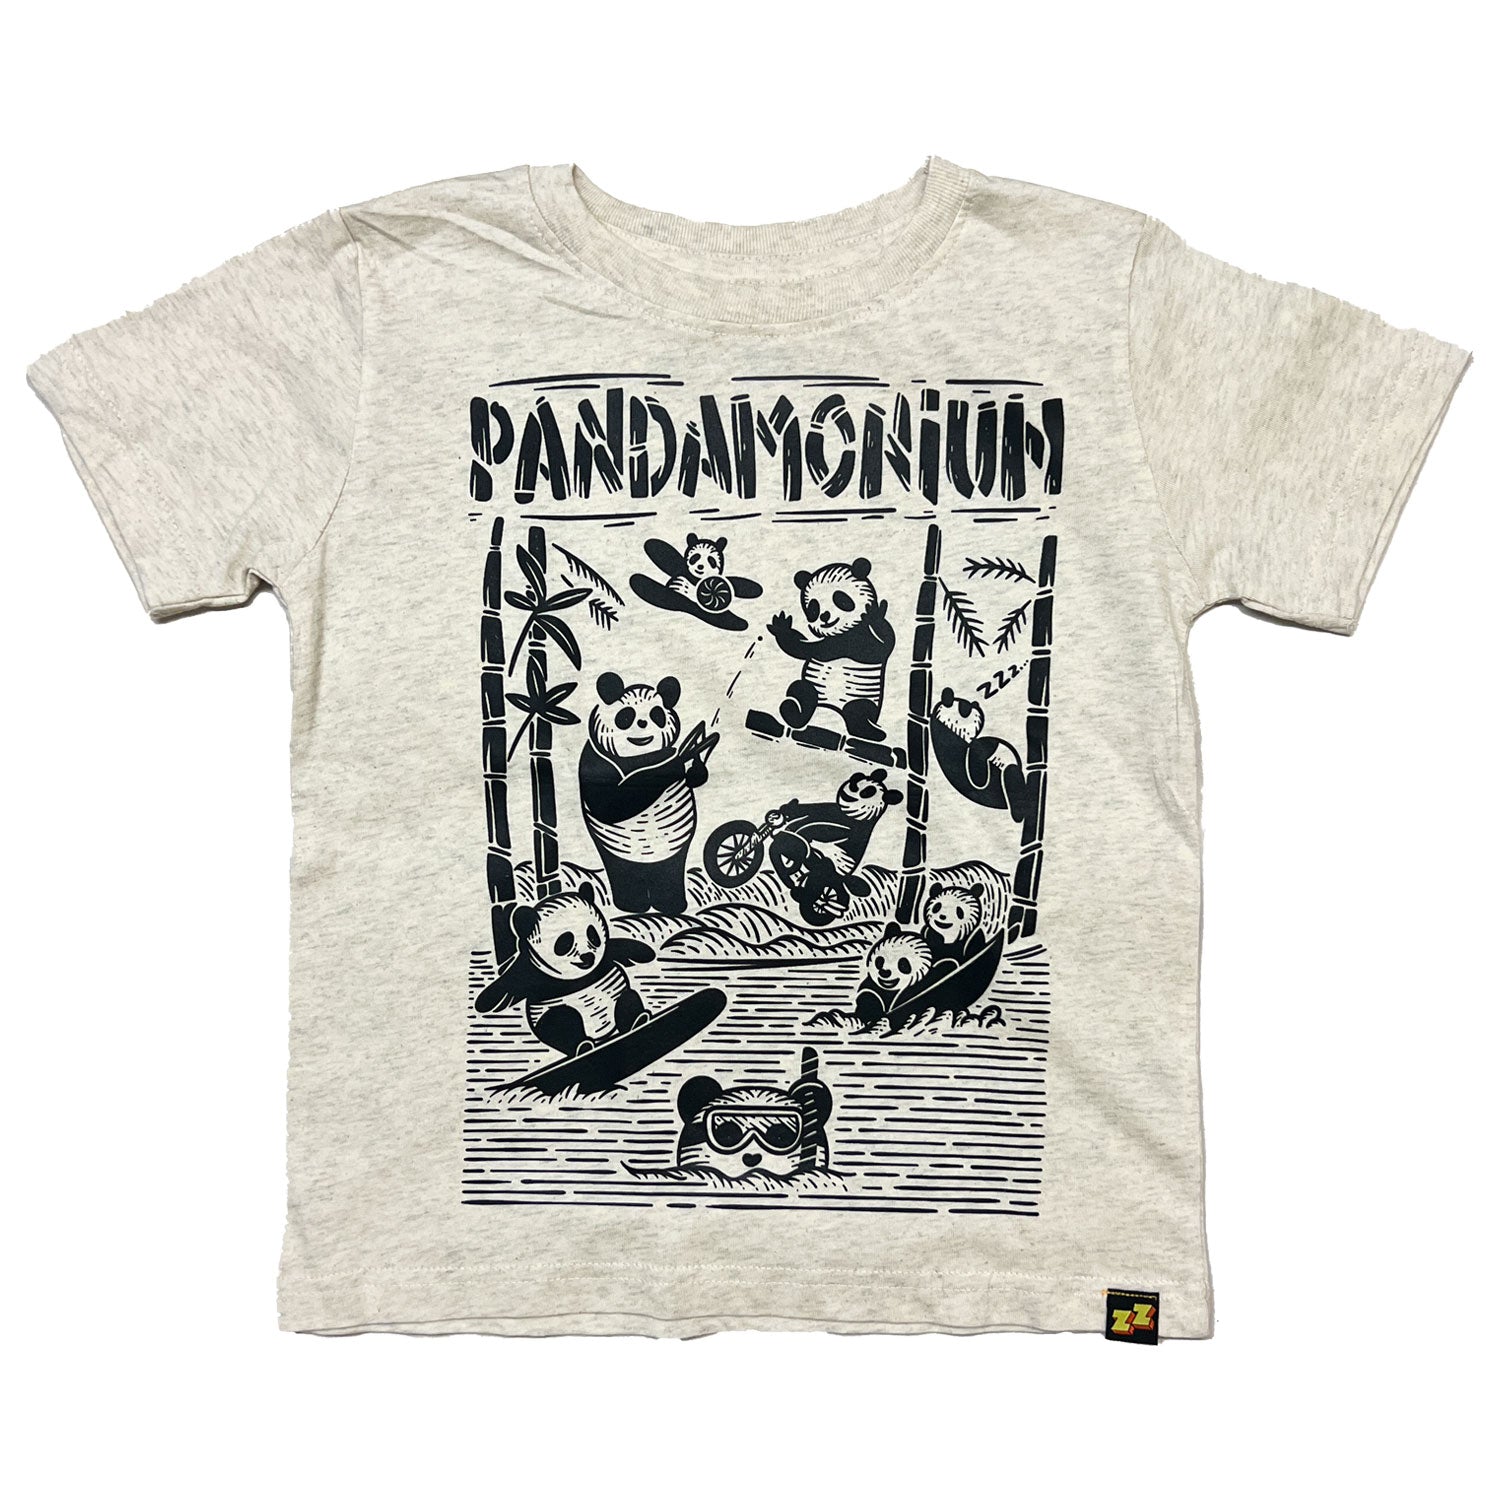 PANDAMONIUM | Kids' Graphic Tee | Sizes 2T-YXL